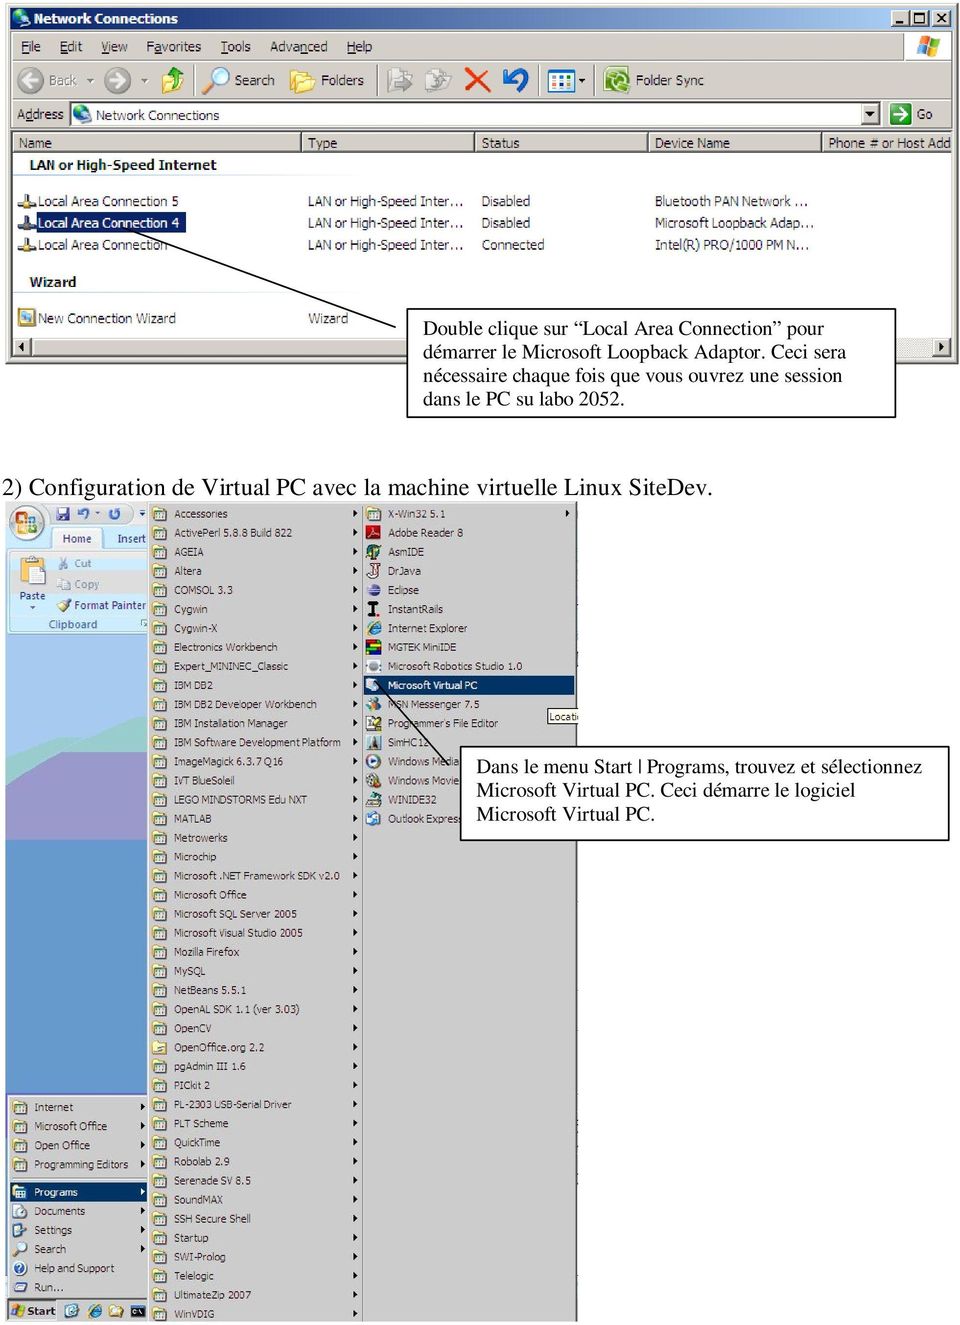 2) Configuration de Virtual PC avec la machine virtuelle Linux SiteDev.